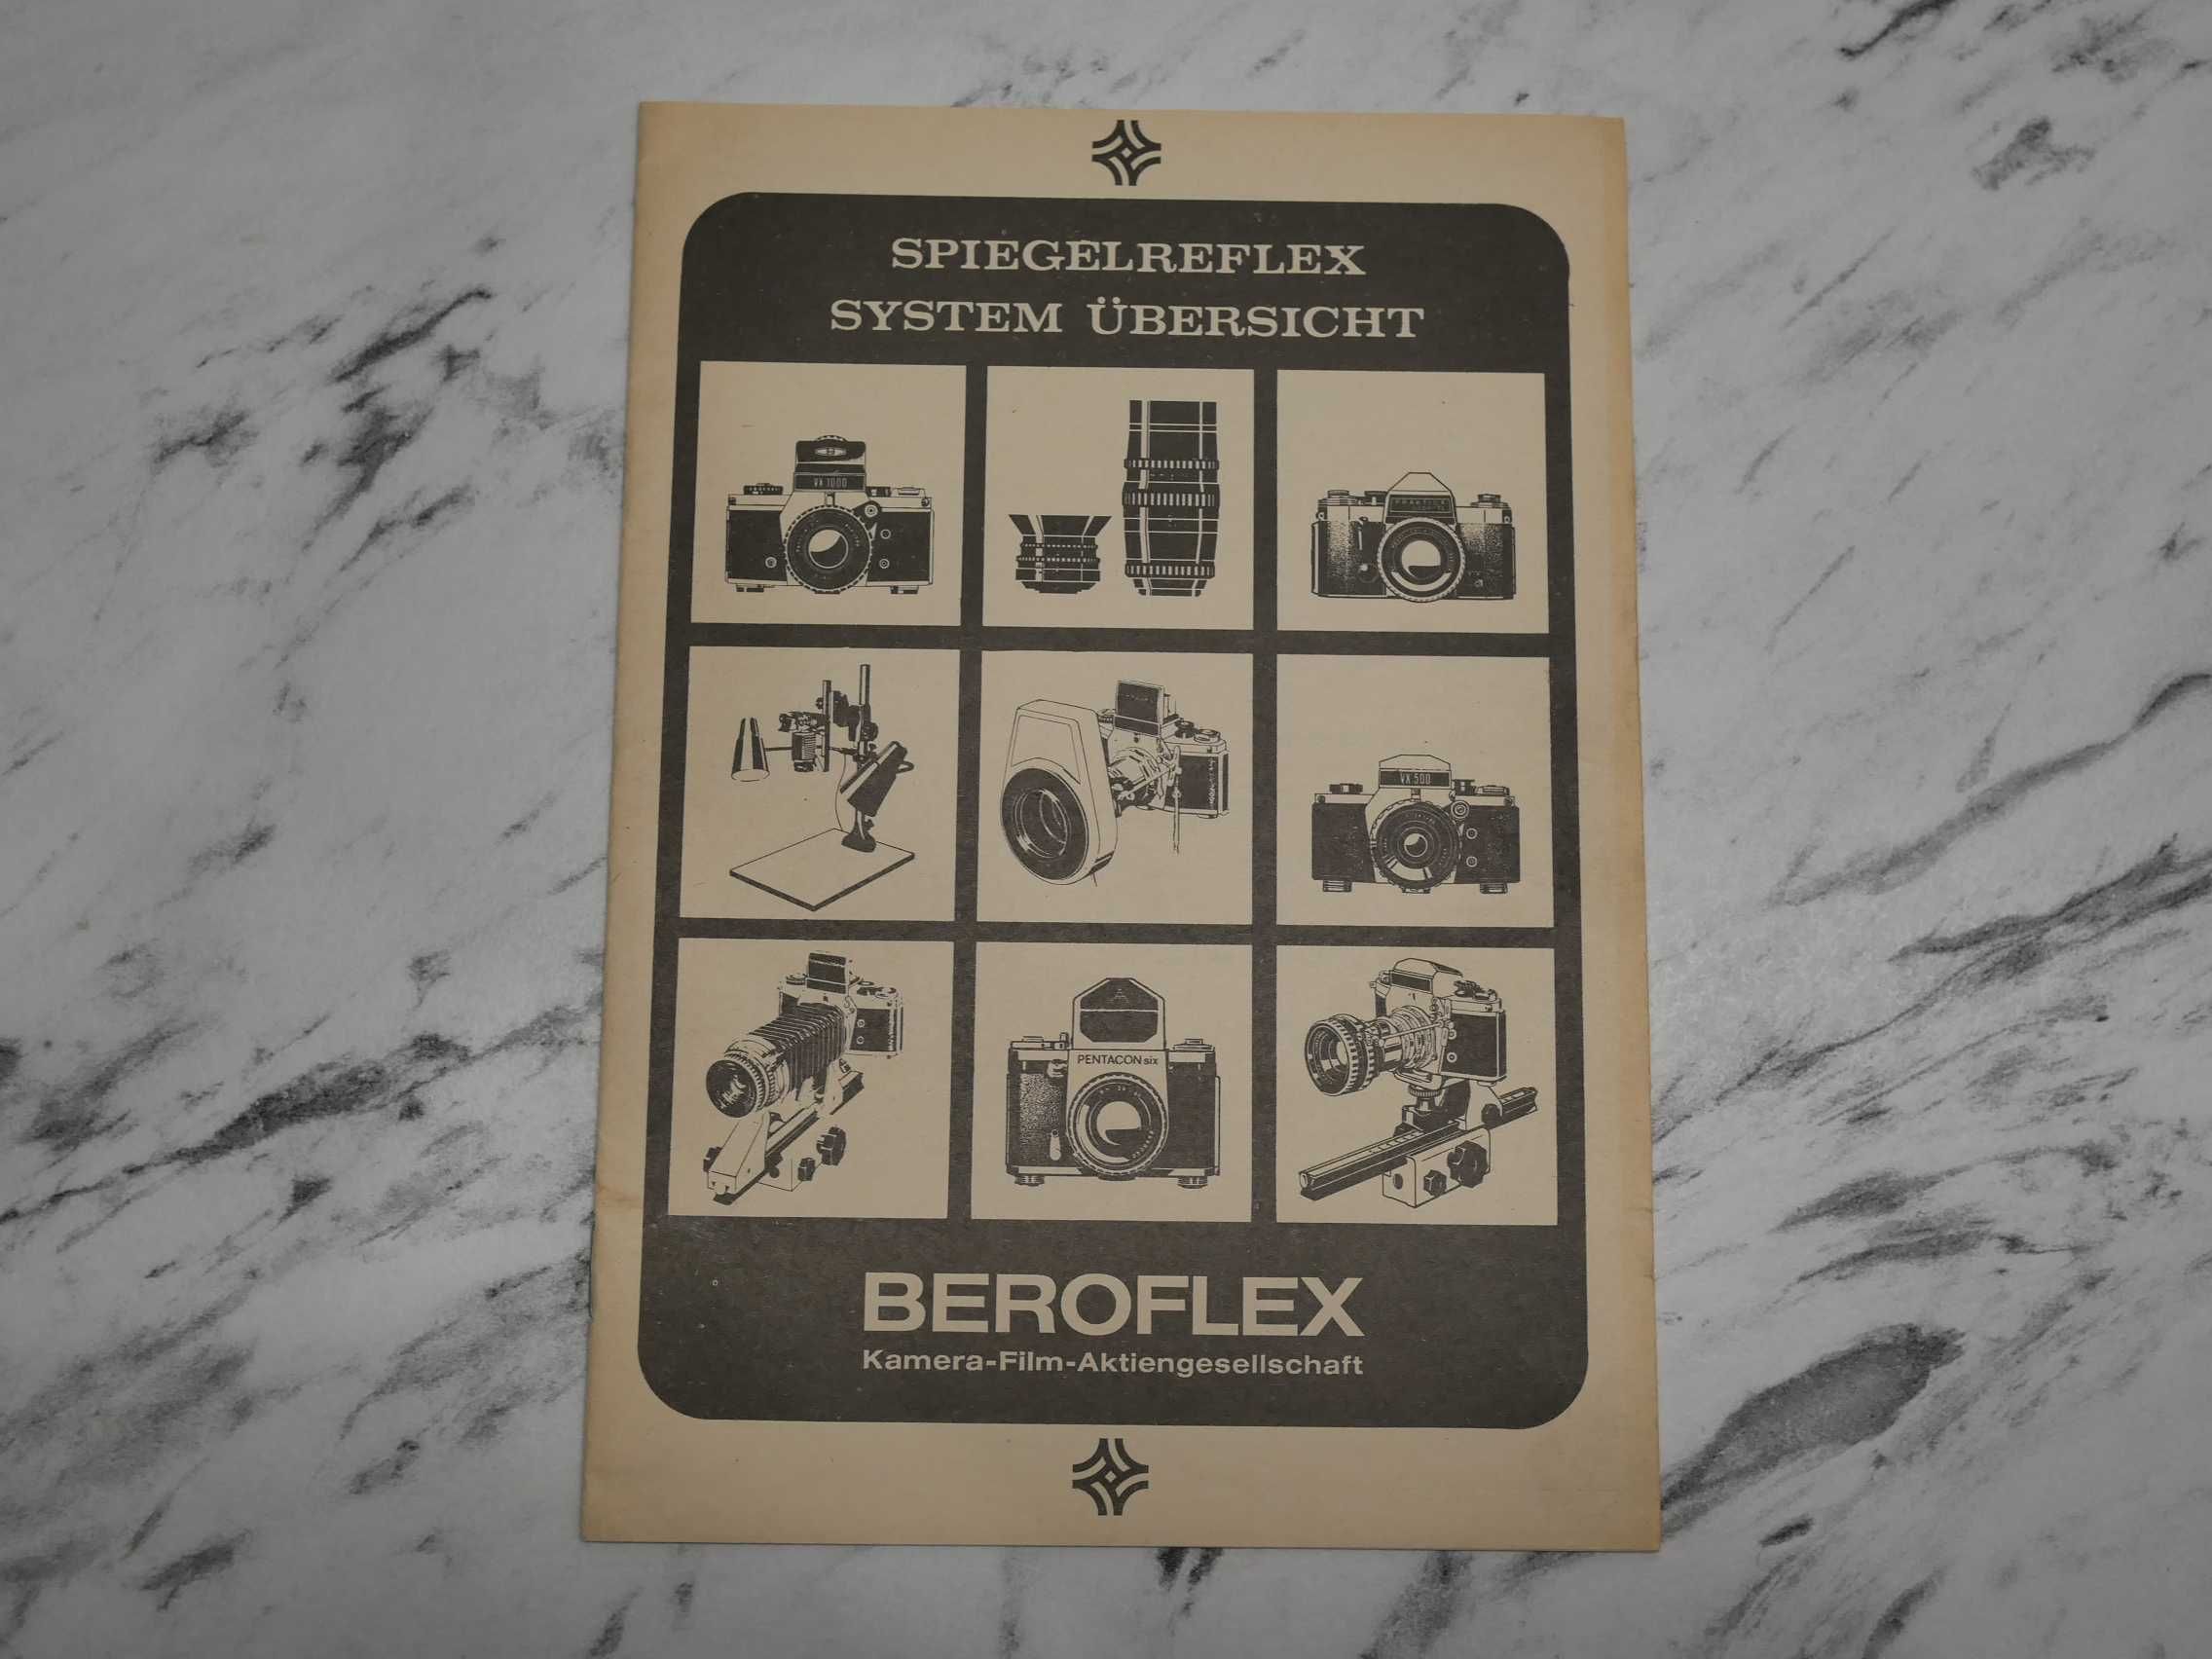 Beroflex - Spiegelreflex System Ubersicht folder